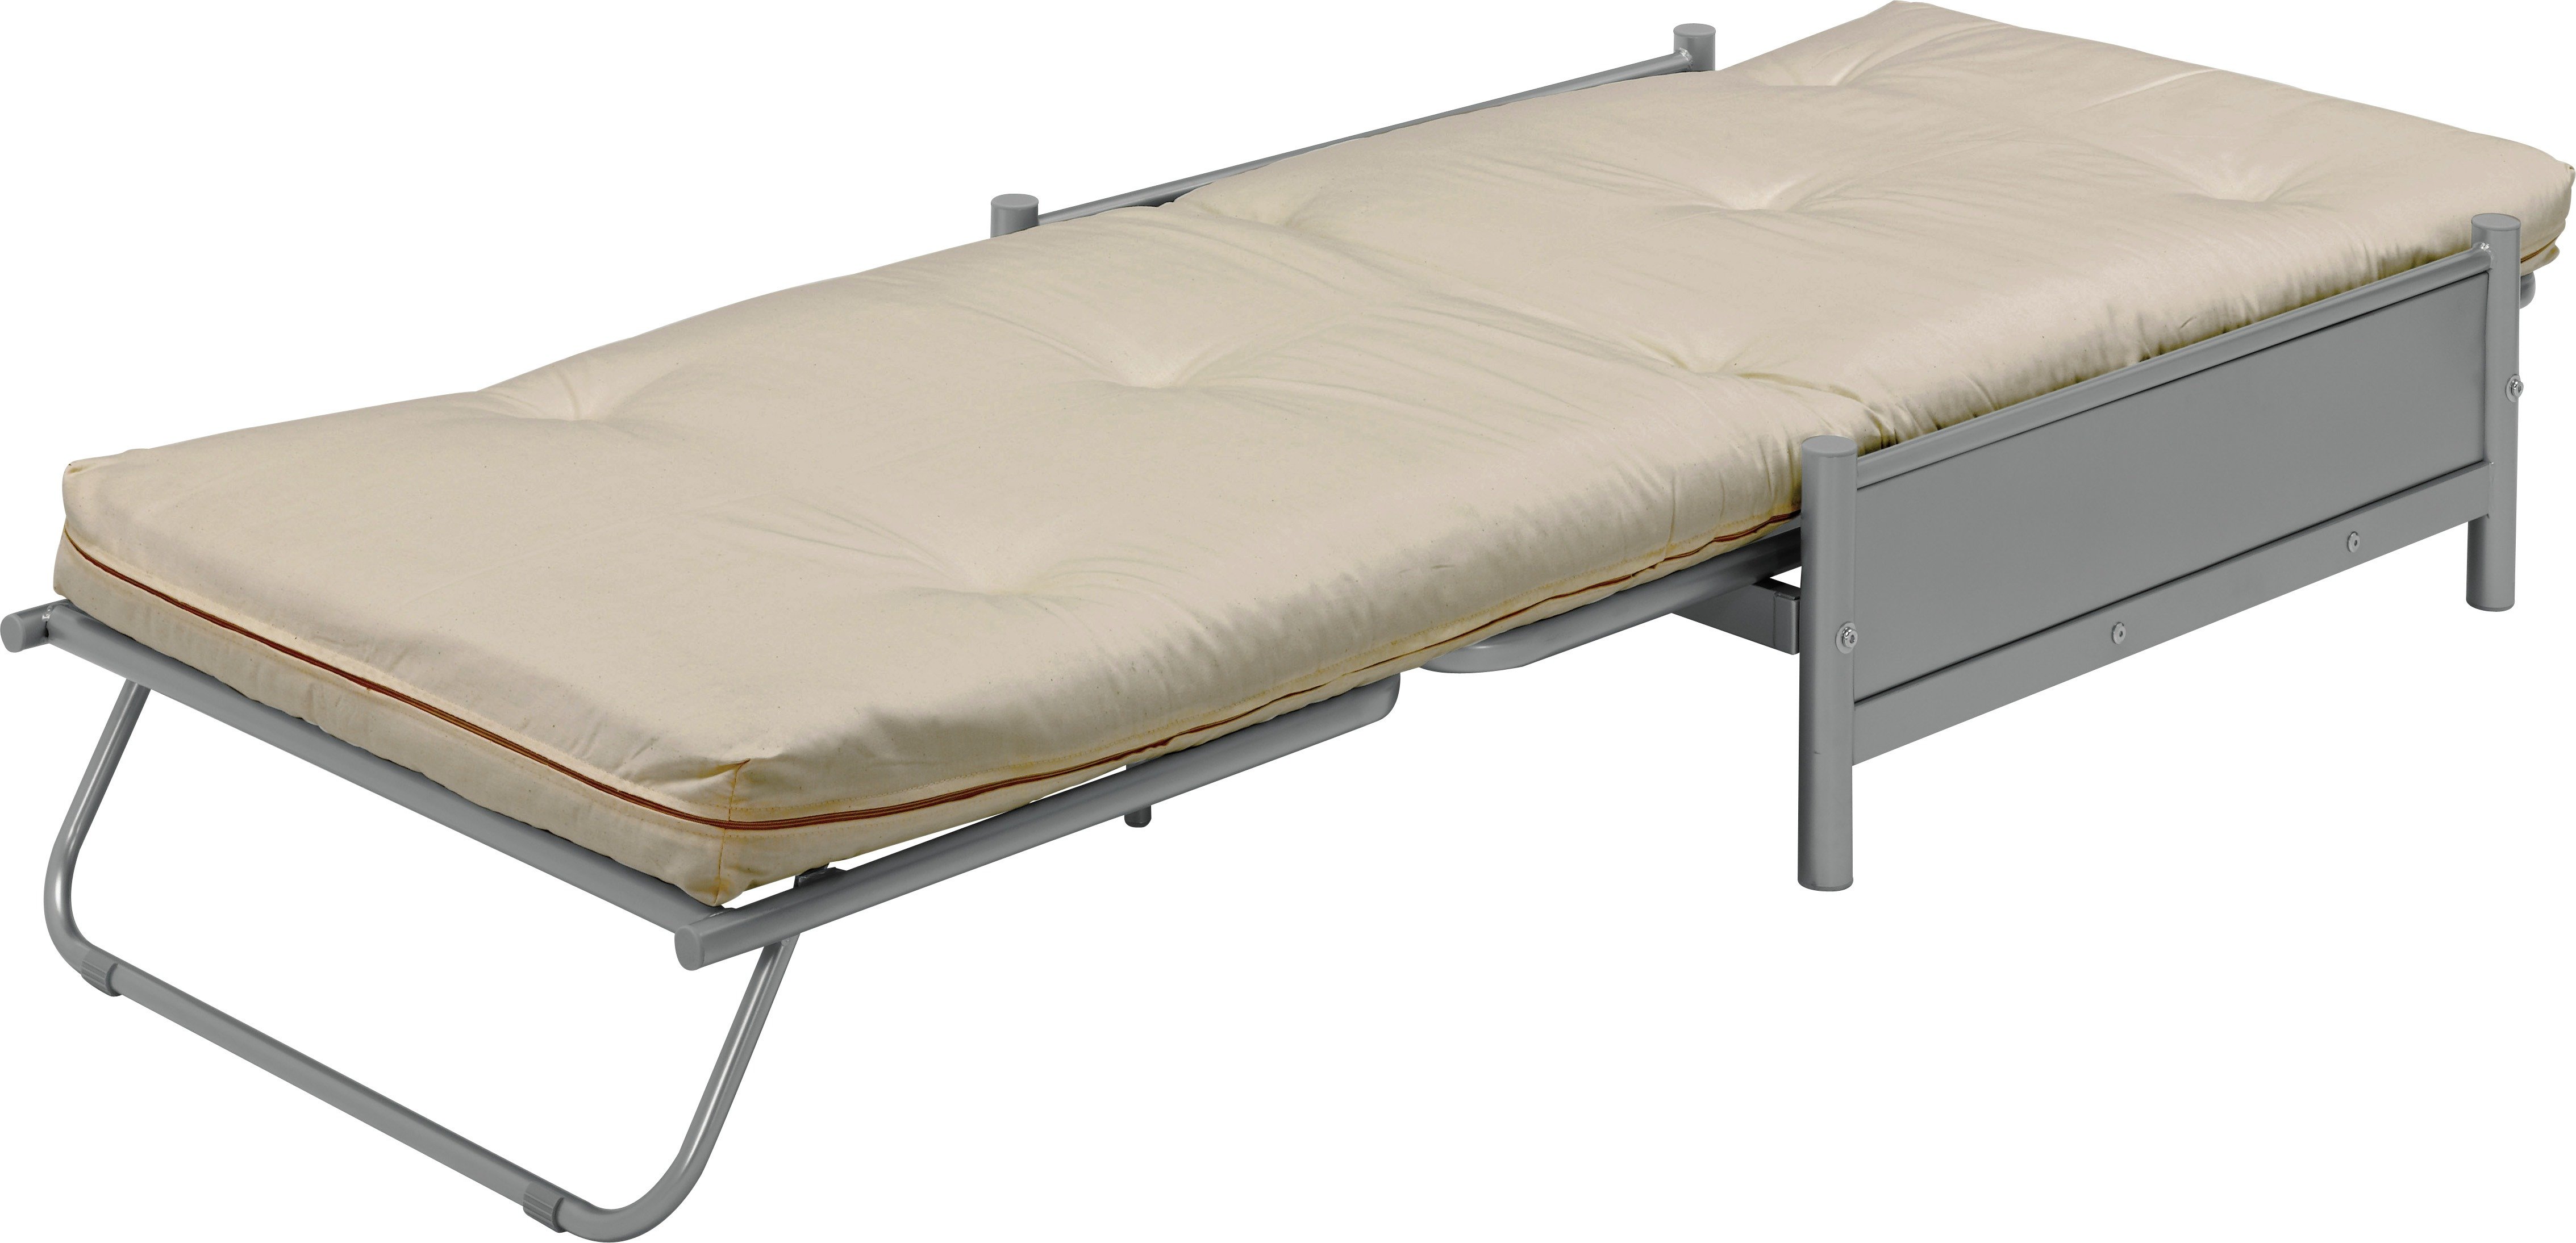 Argos Home Single Metal Futon Sofa Bed w/ Mattress